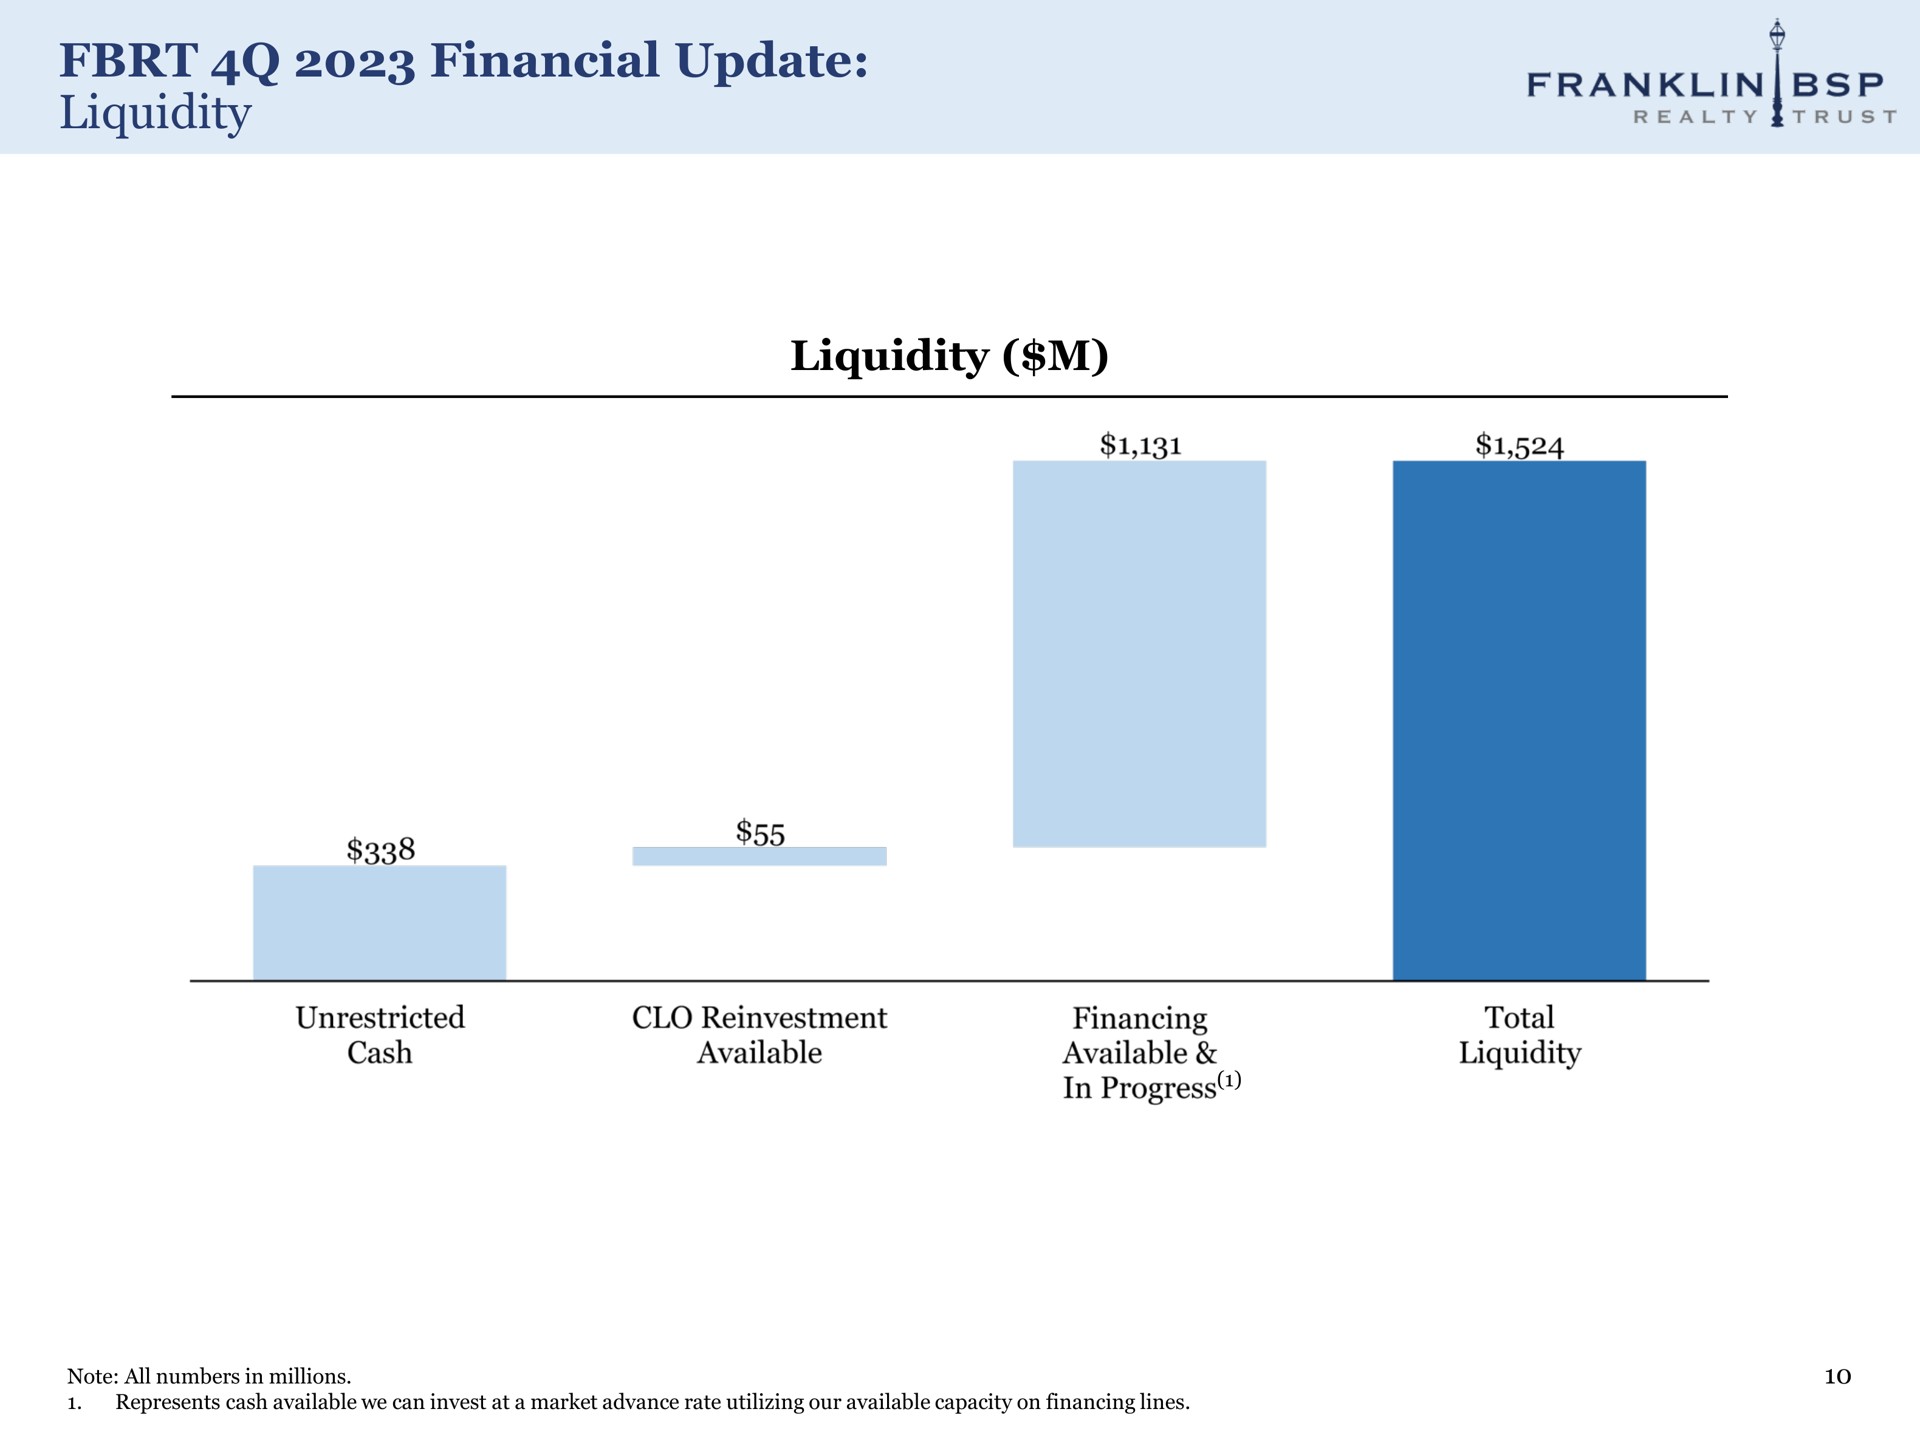 financial update liquidity liquidity ule | Franklin BSP Realty Trust